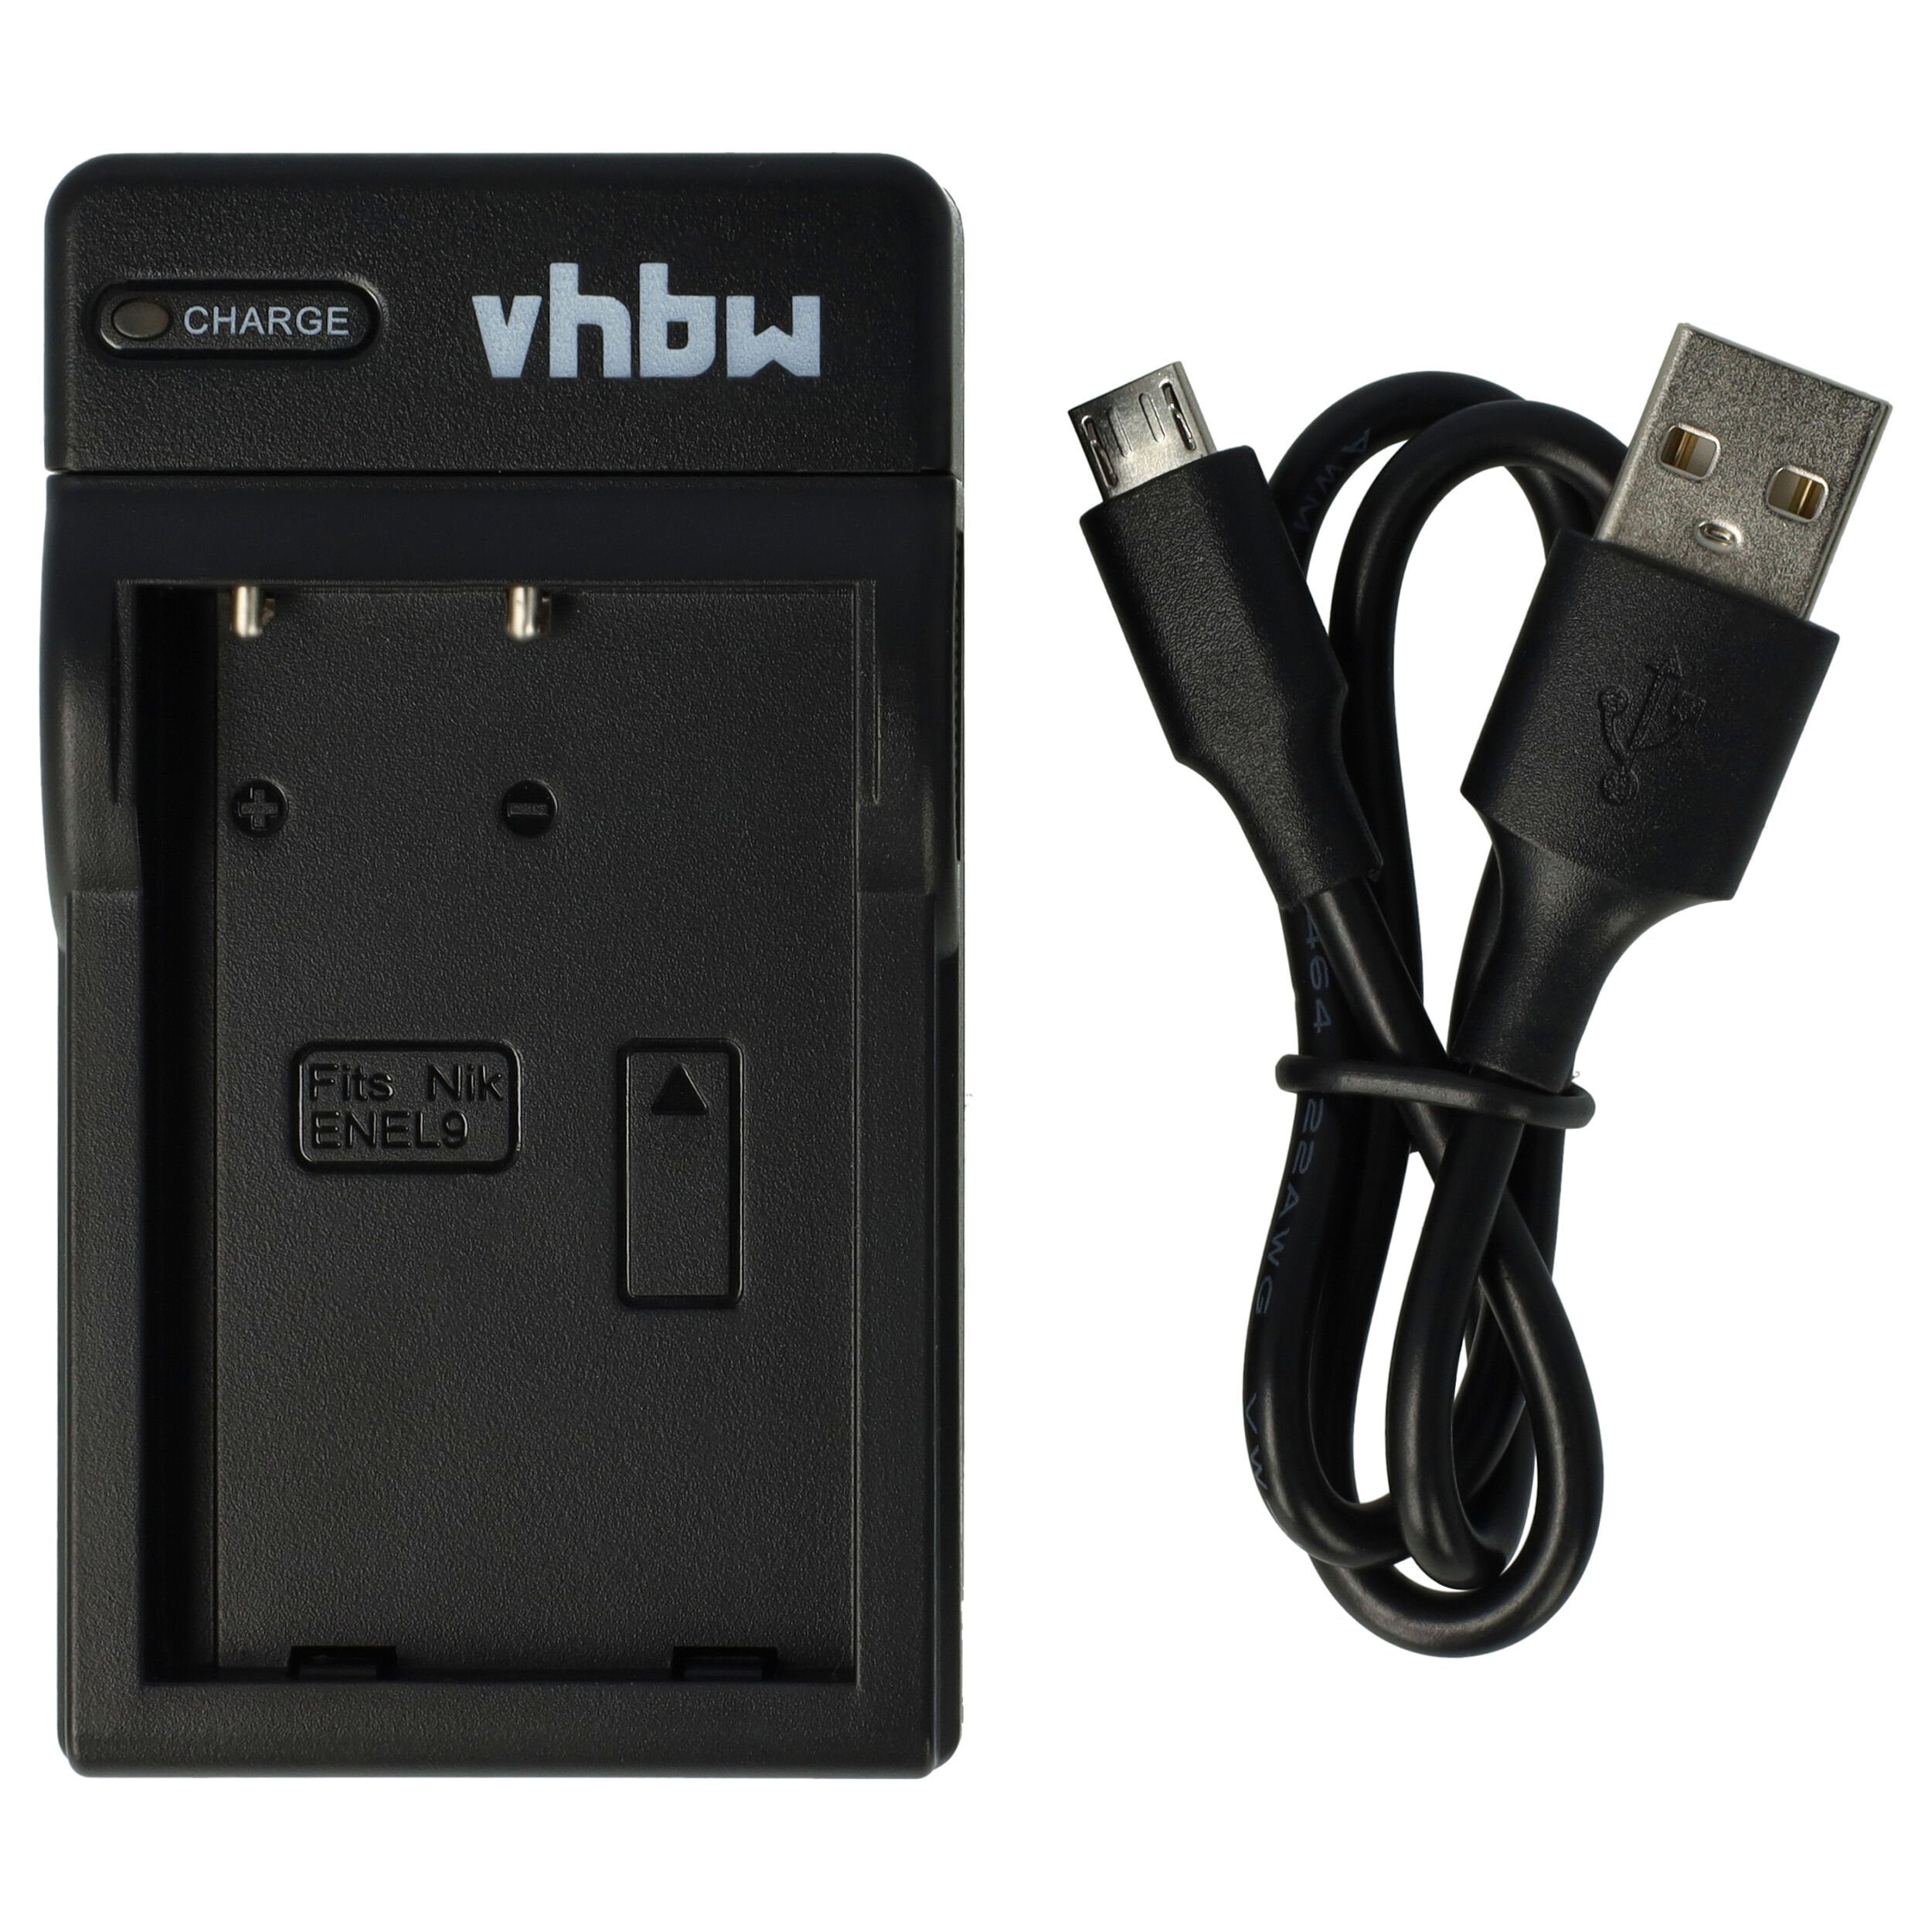 kalb, Einbau USB-Hub, Edelstahl, Steckdose für Smartphone, Tablet,  E-Reader Möbeleinbau 12V